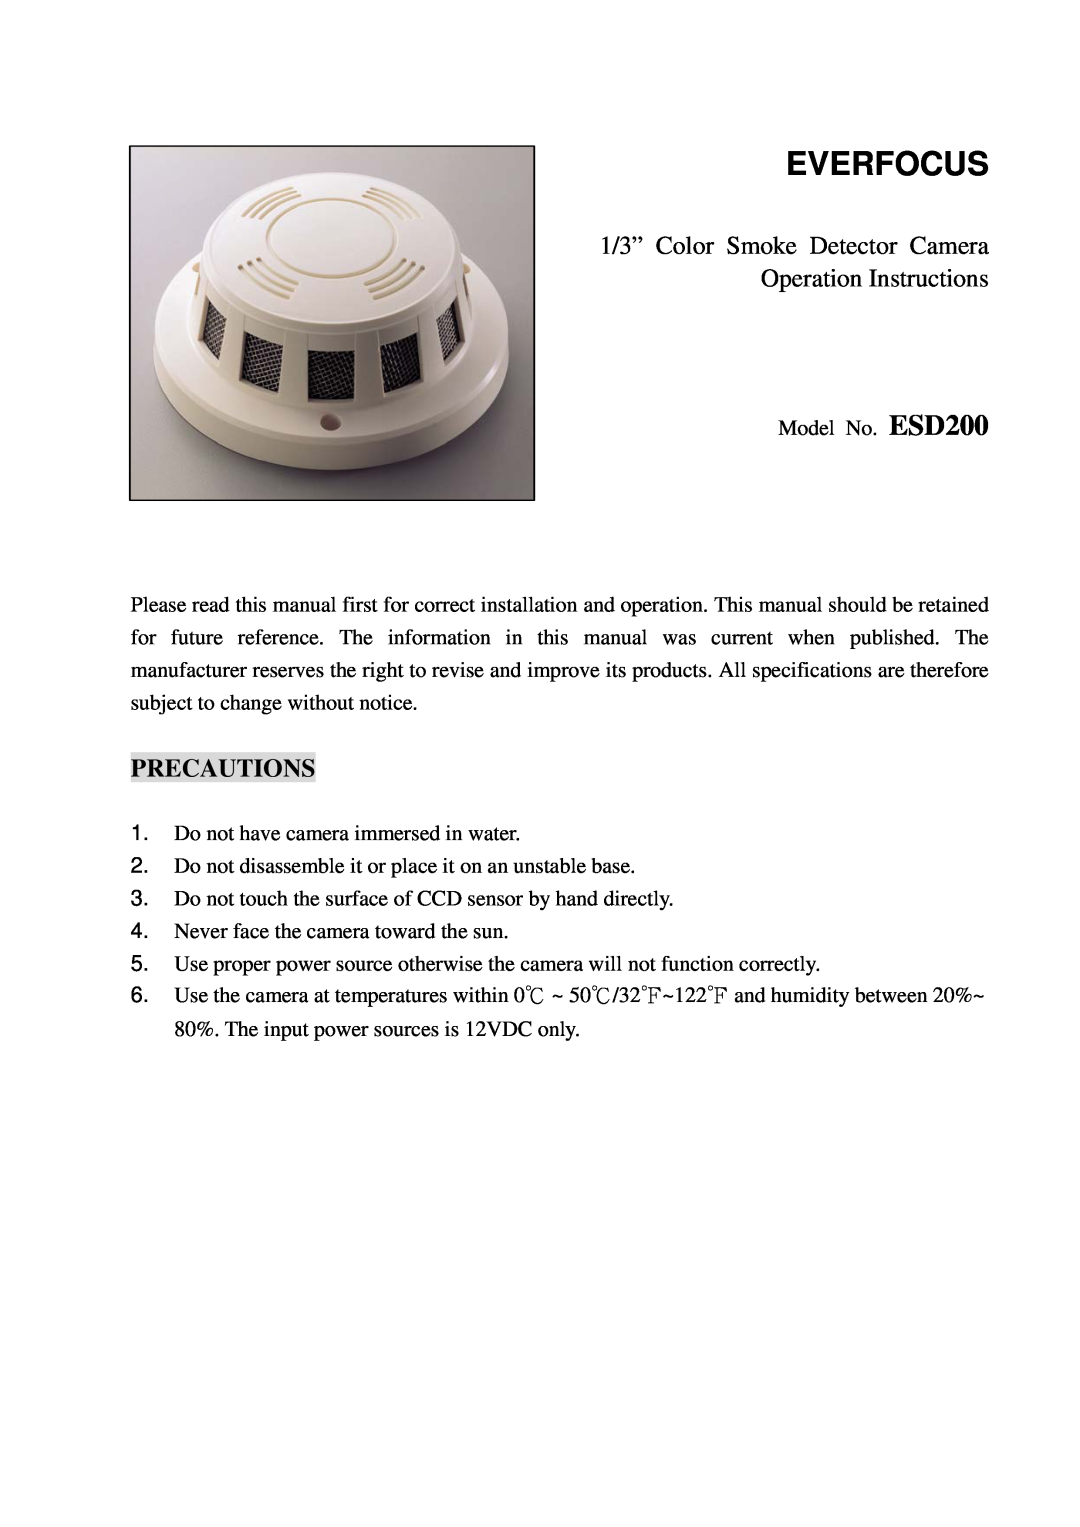 EverFocus Esd200 specifications Precautions, Everfocus, 1/3” Color Smoke Detector Camera, Operation Instructions 